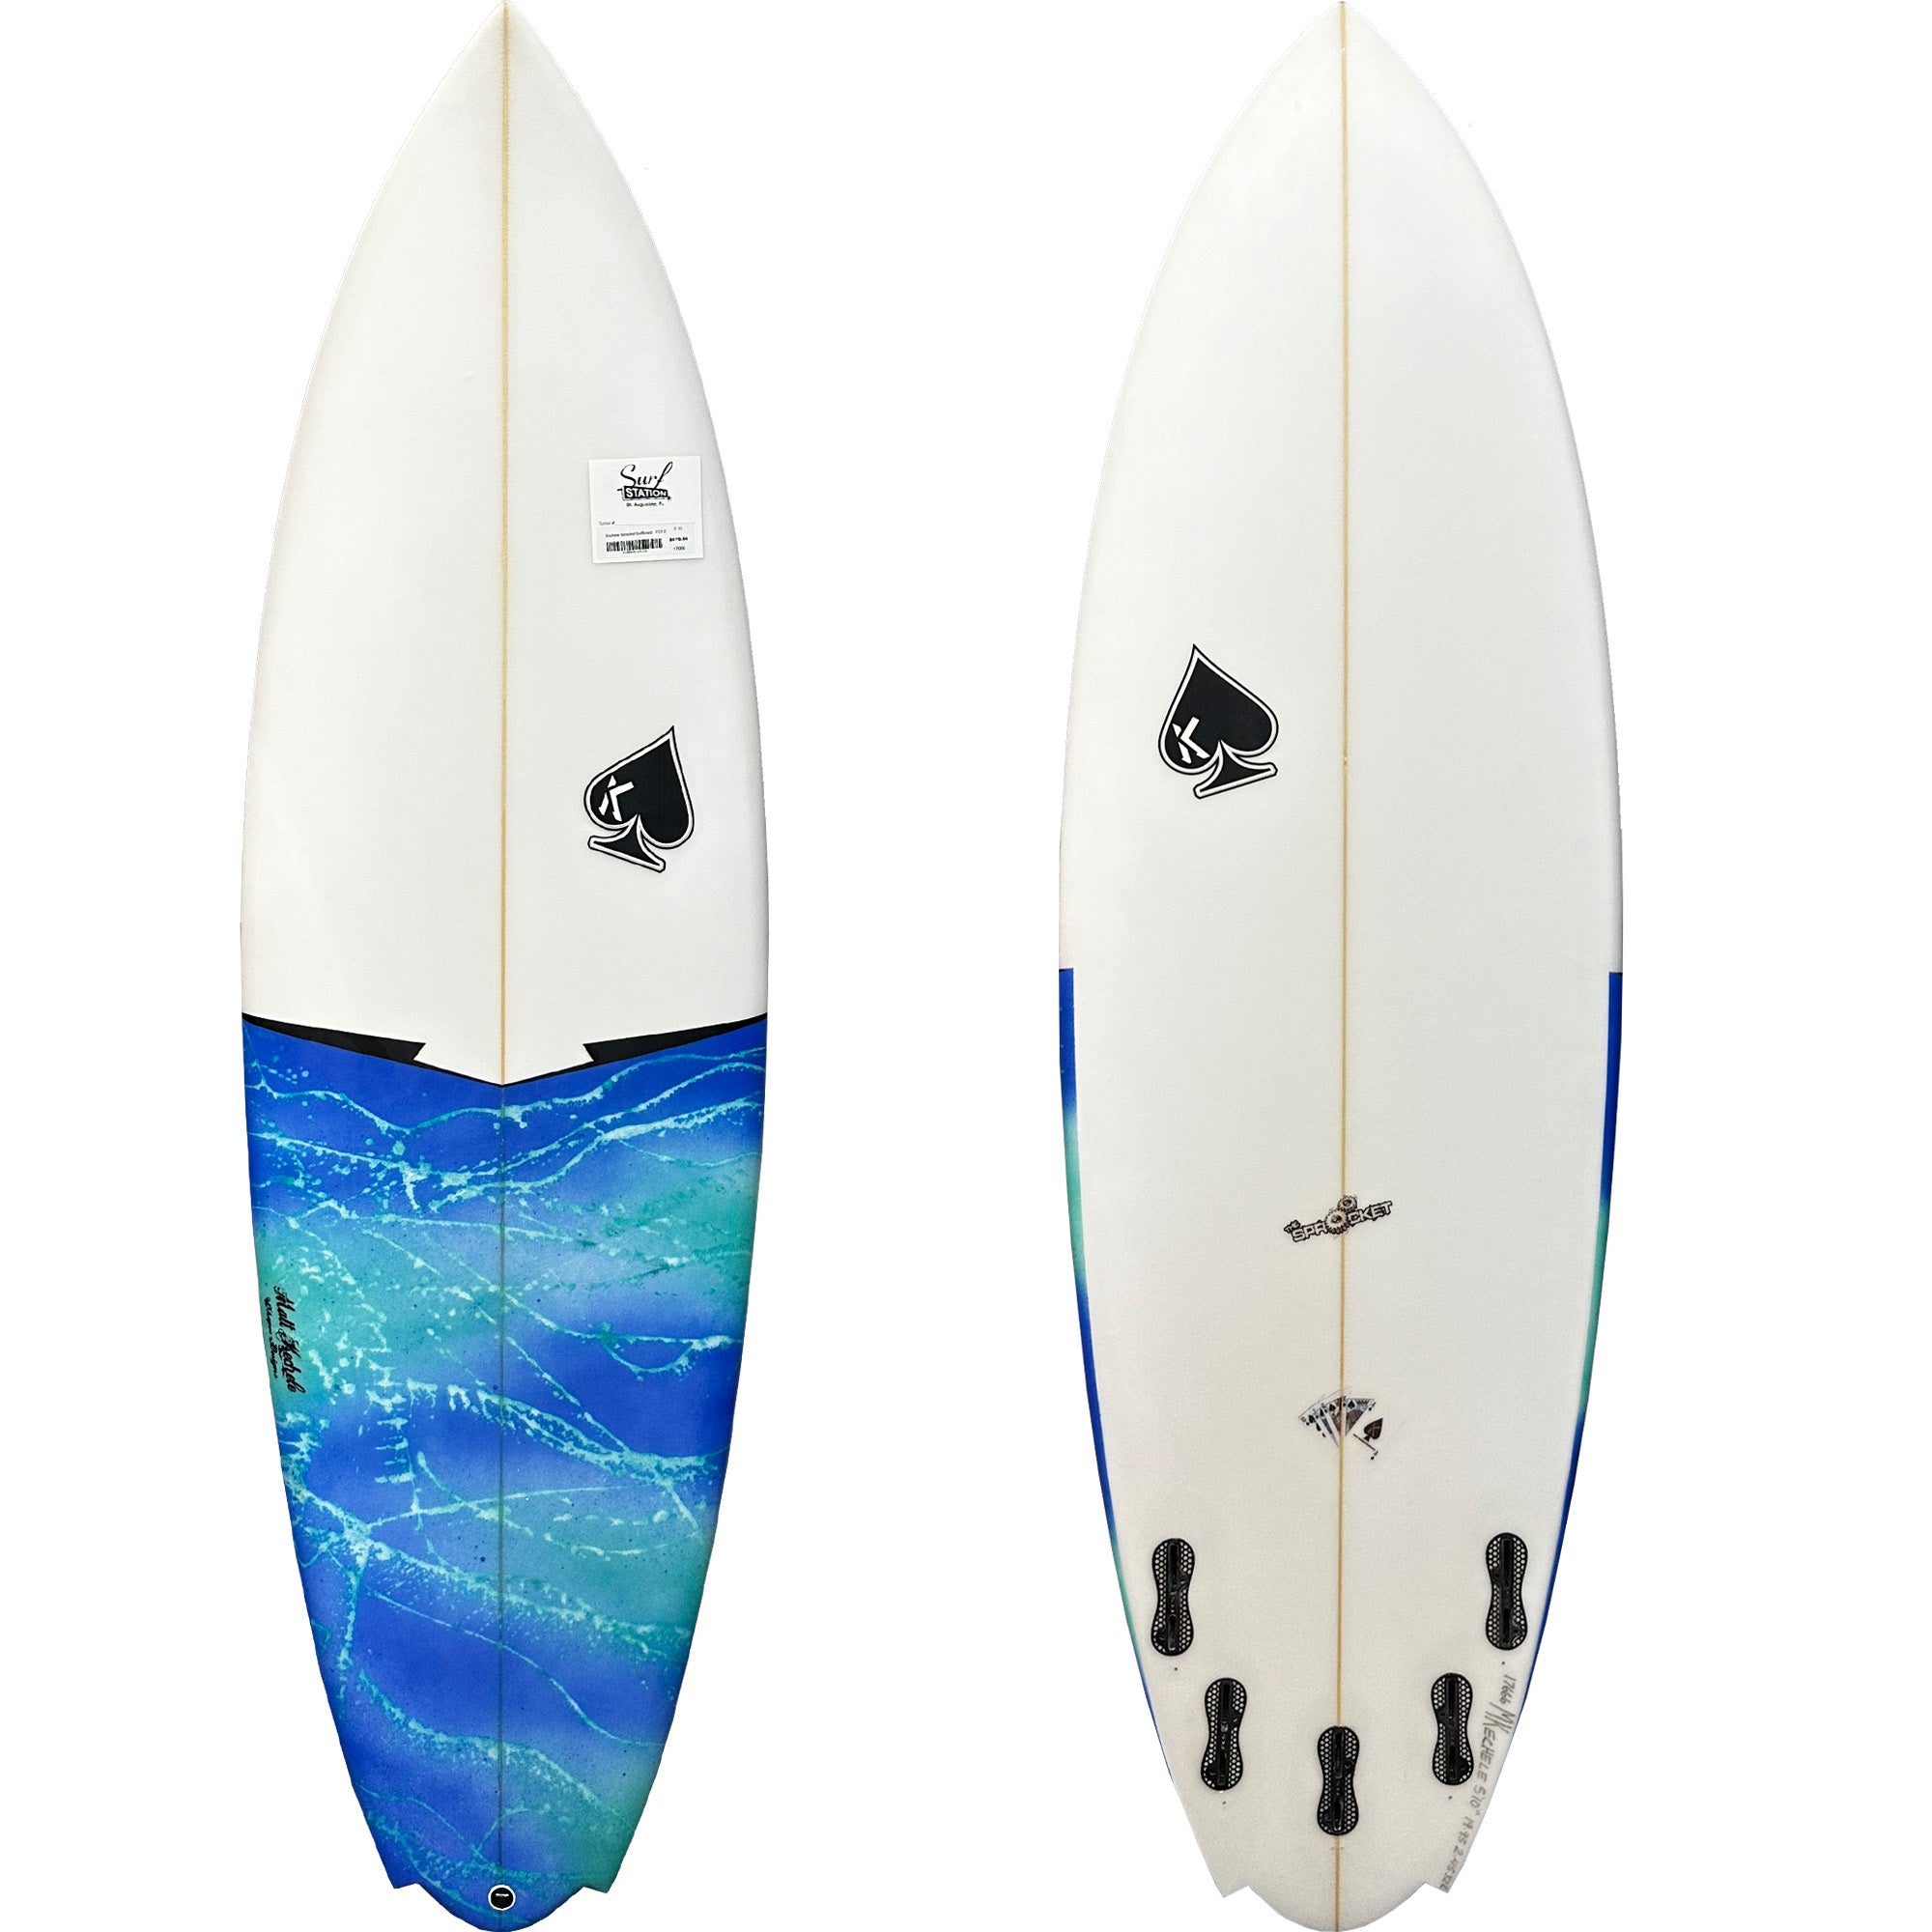 Kechele Sprocket Surfboard - FCS II